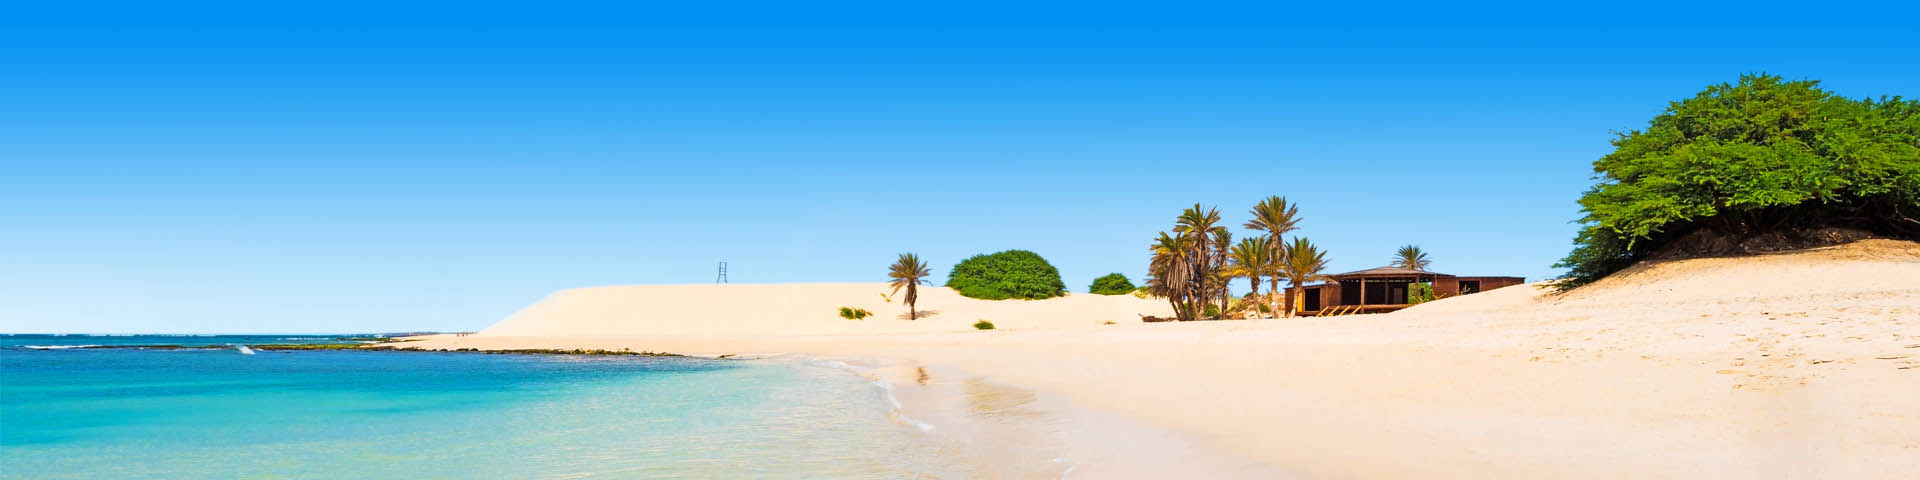 Parelwit zandstrand met helderblauw zeewater aan de kust van Kaapverdië